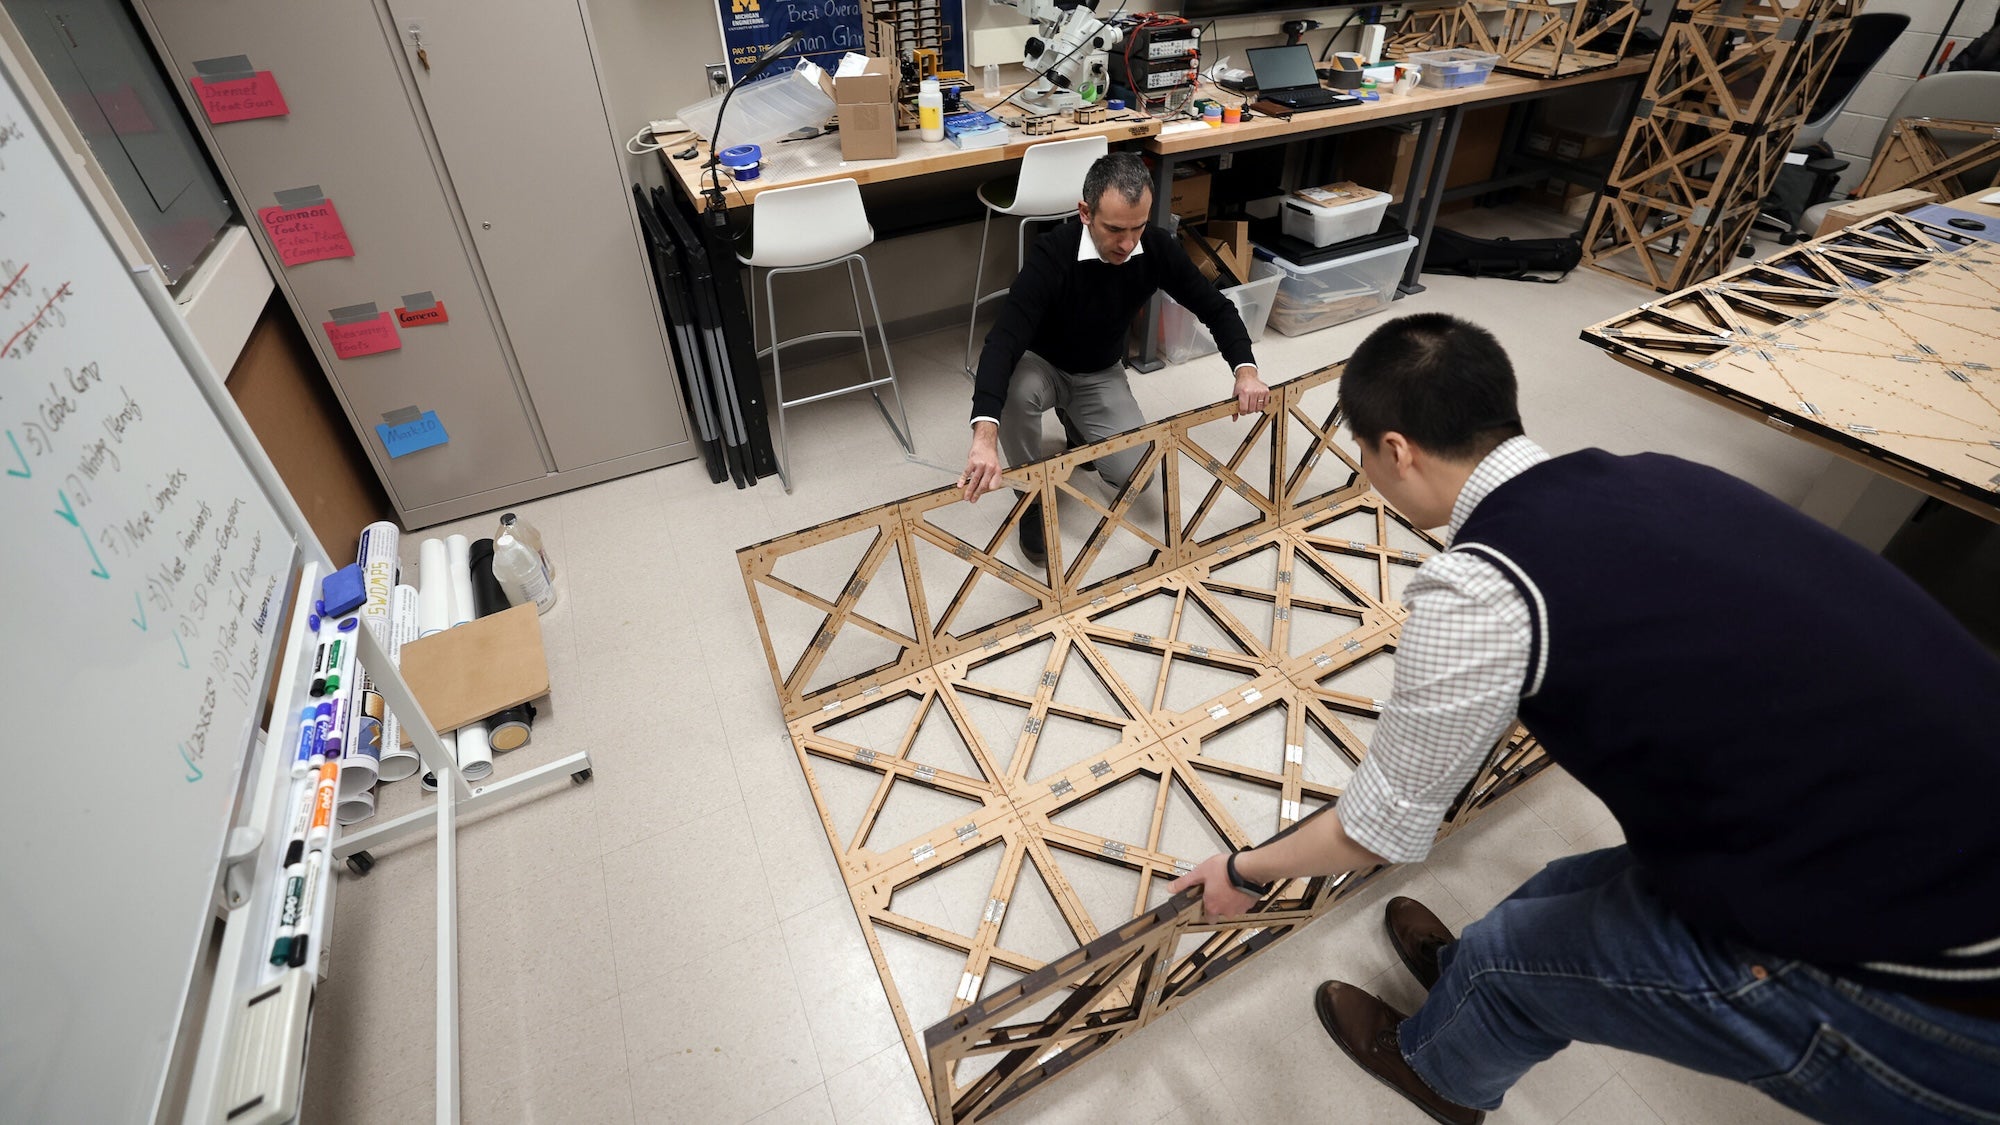 Puentes flexibles y resistentes inspirados en origami podrían ayudar a navegar en zonas de desastre